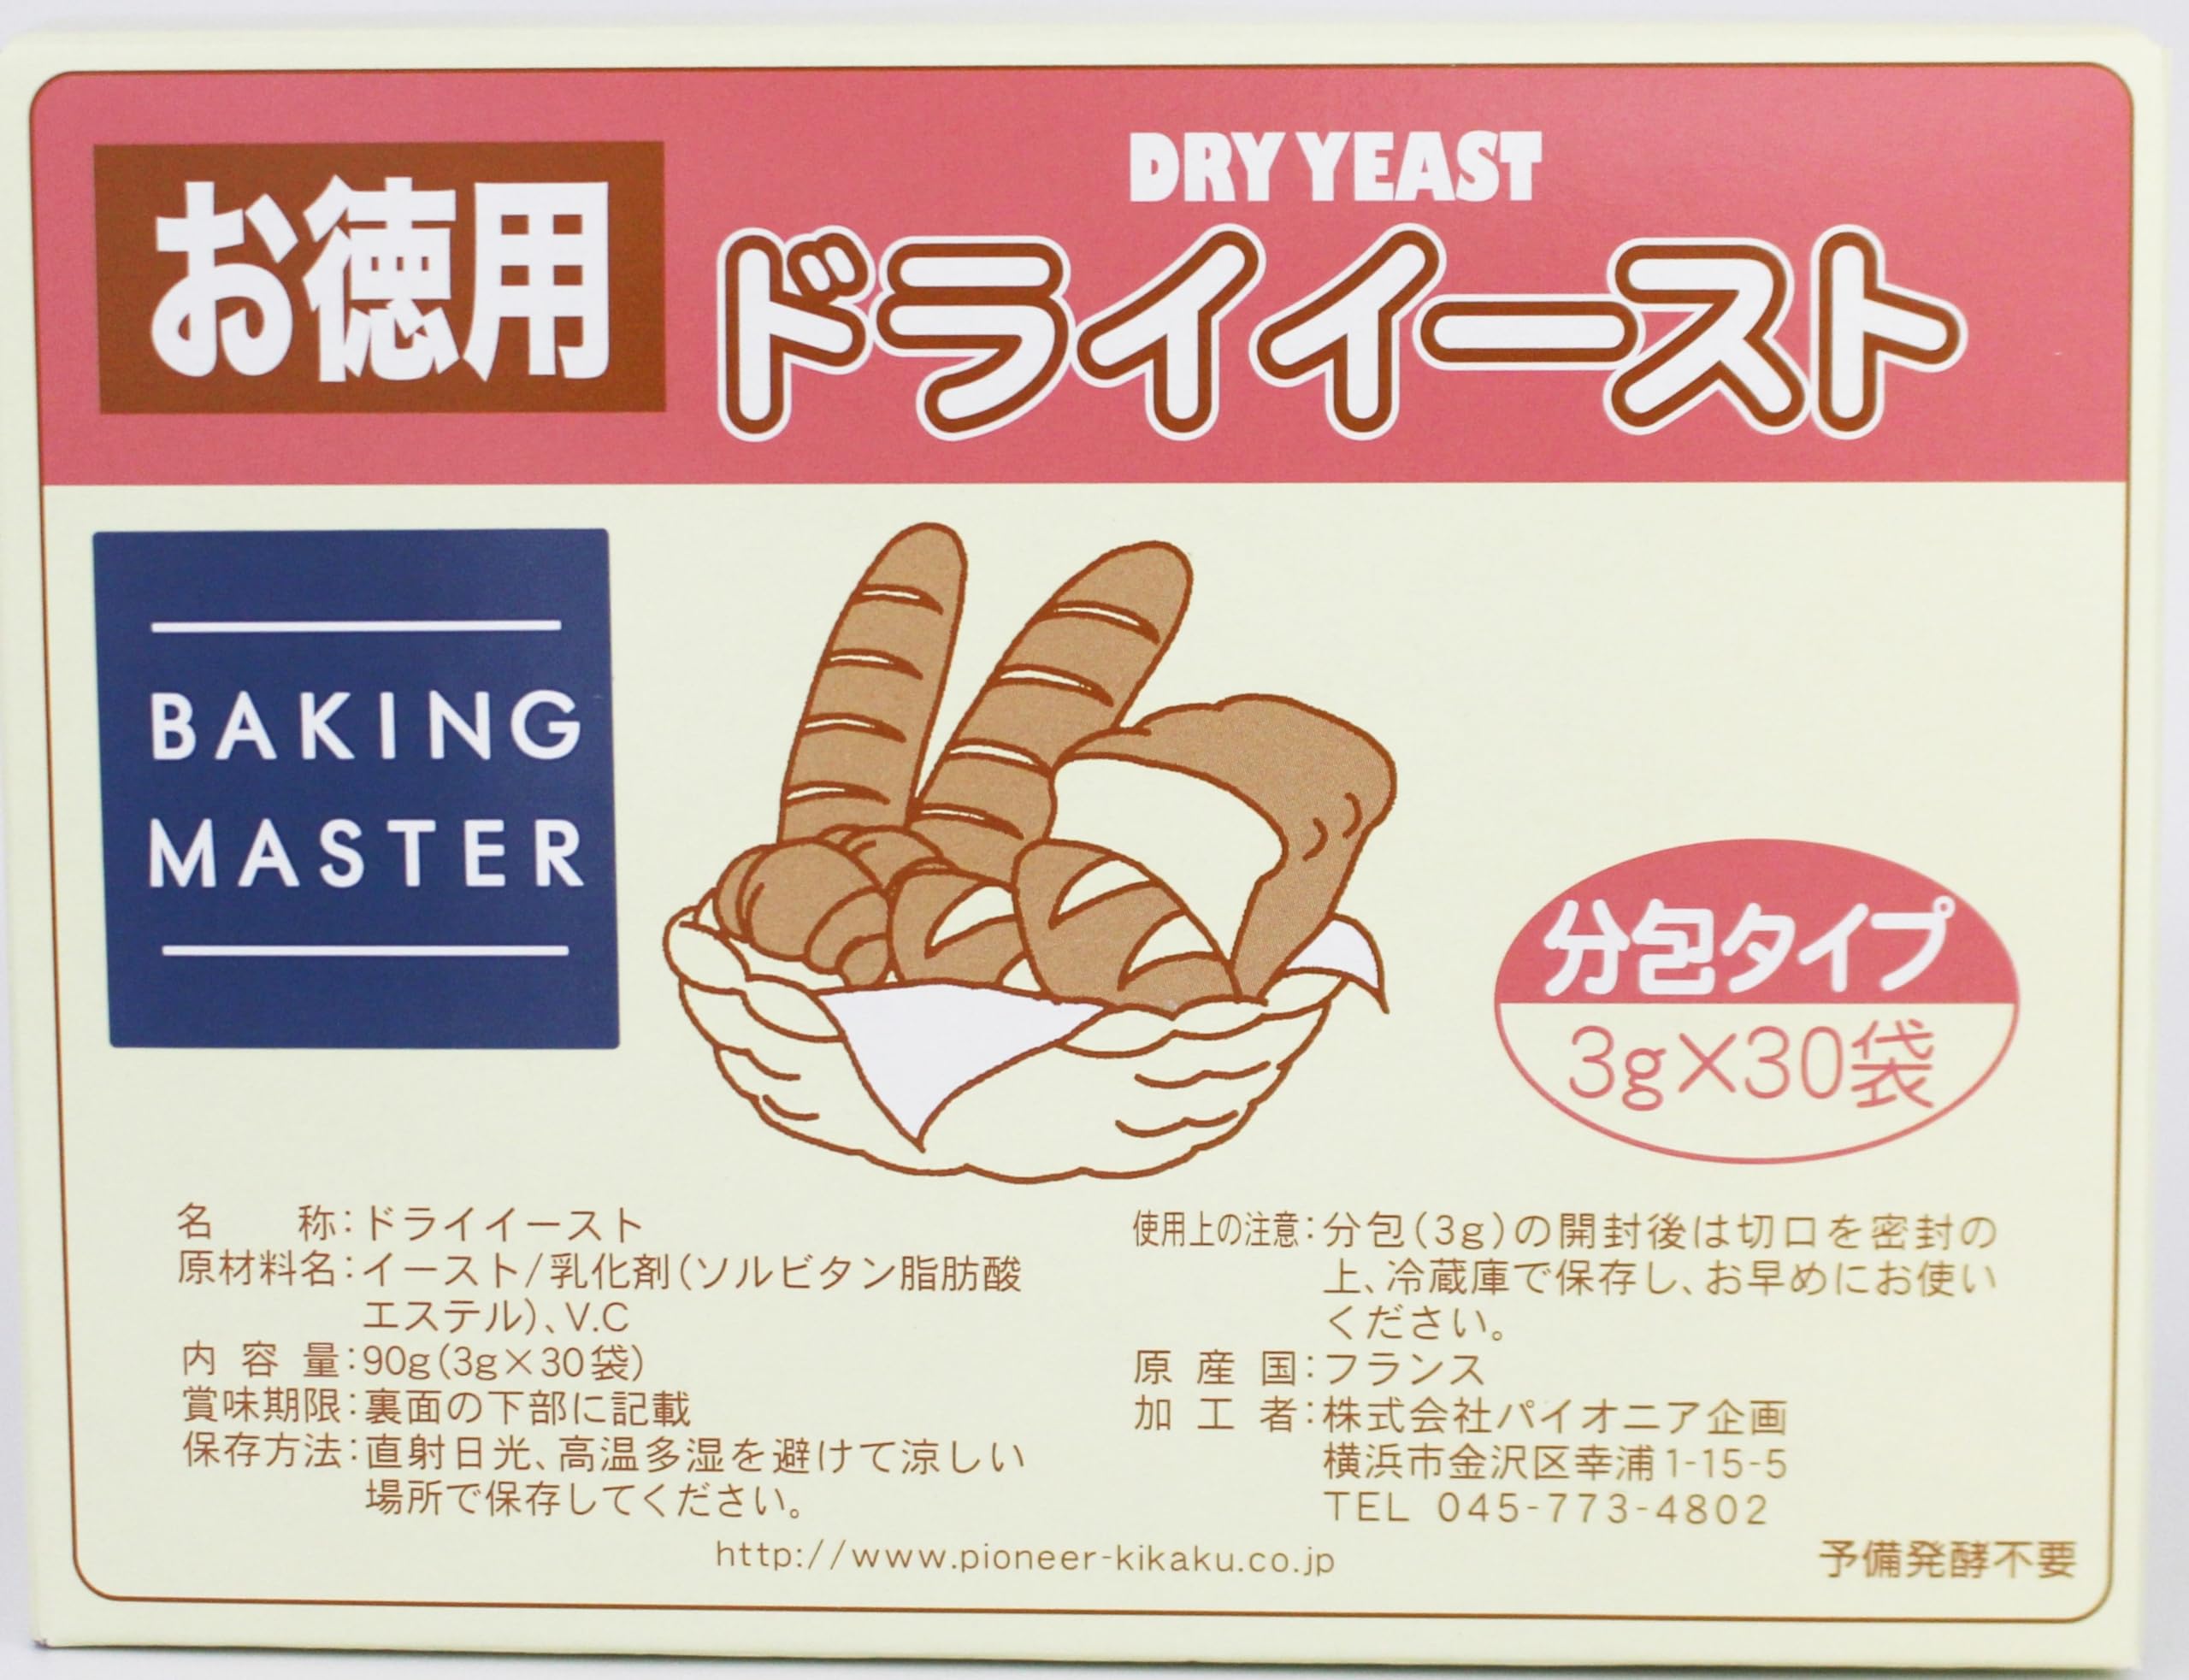 BAKING MASTER ドライイースト金 3g×30個【サフ インスタント・ドライイースト使用】